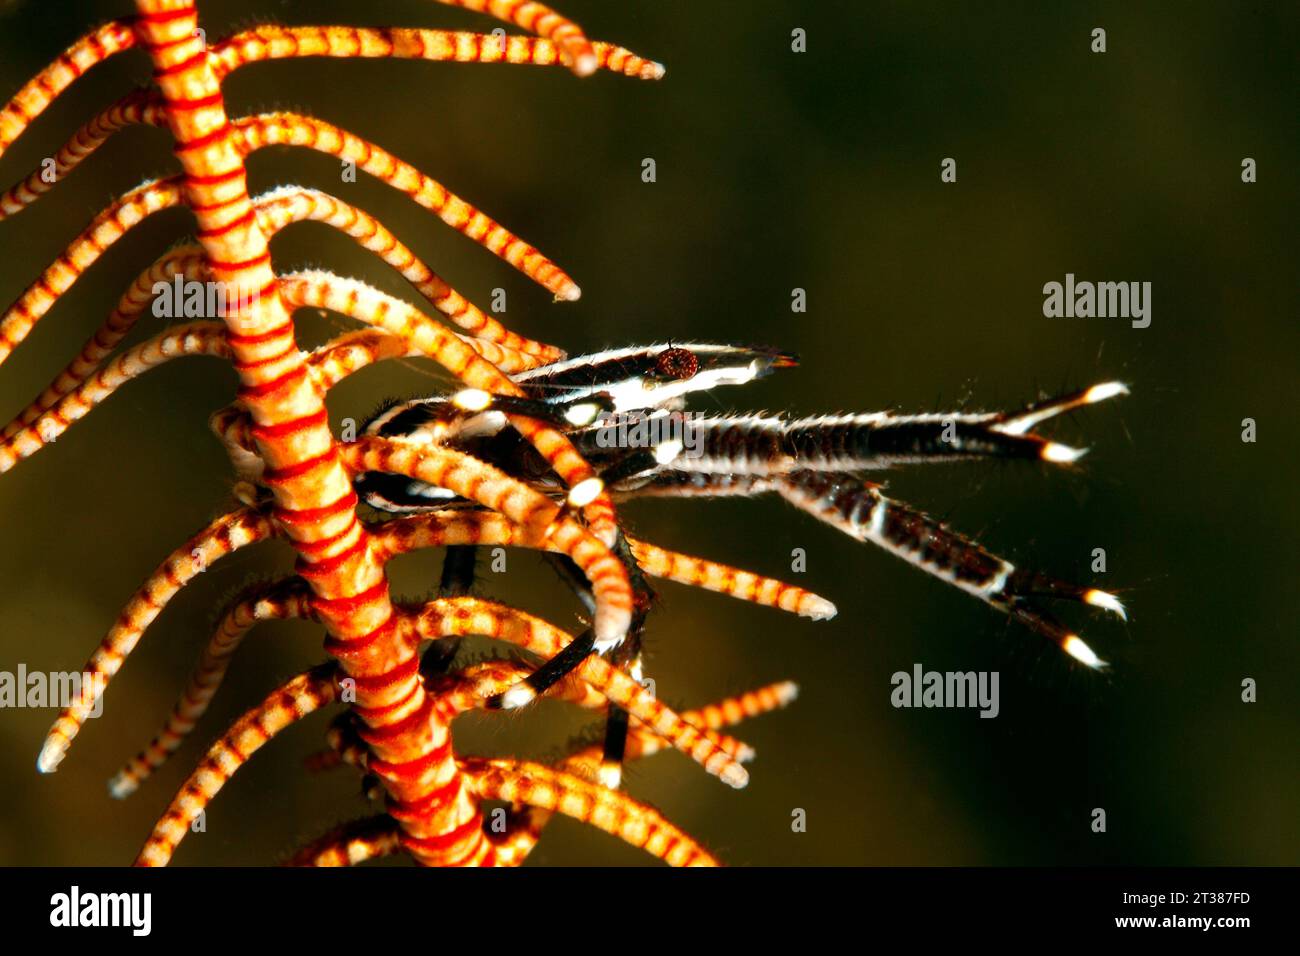 Homard squat élégant, Allogalathea elegans. Ces homards squats vivent sur les crinoïdes ou les étoiles à plumes. Tulamben, Bali, Indonésie. Mer de Bali, Océan Indien Banque D'Images